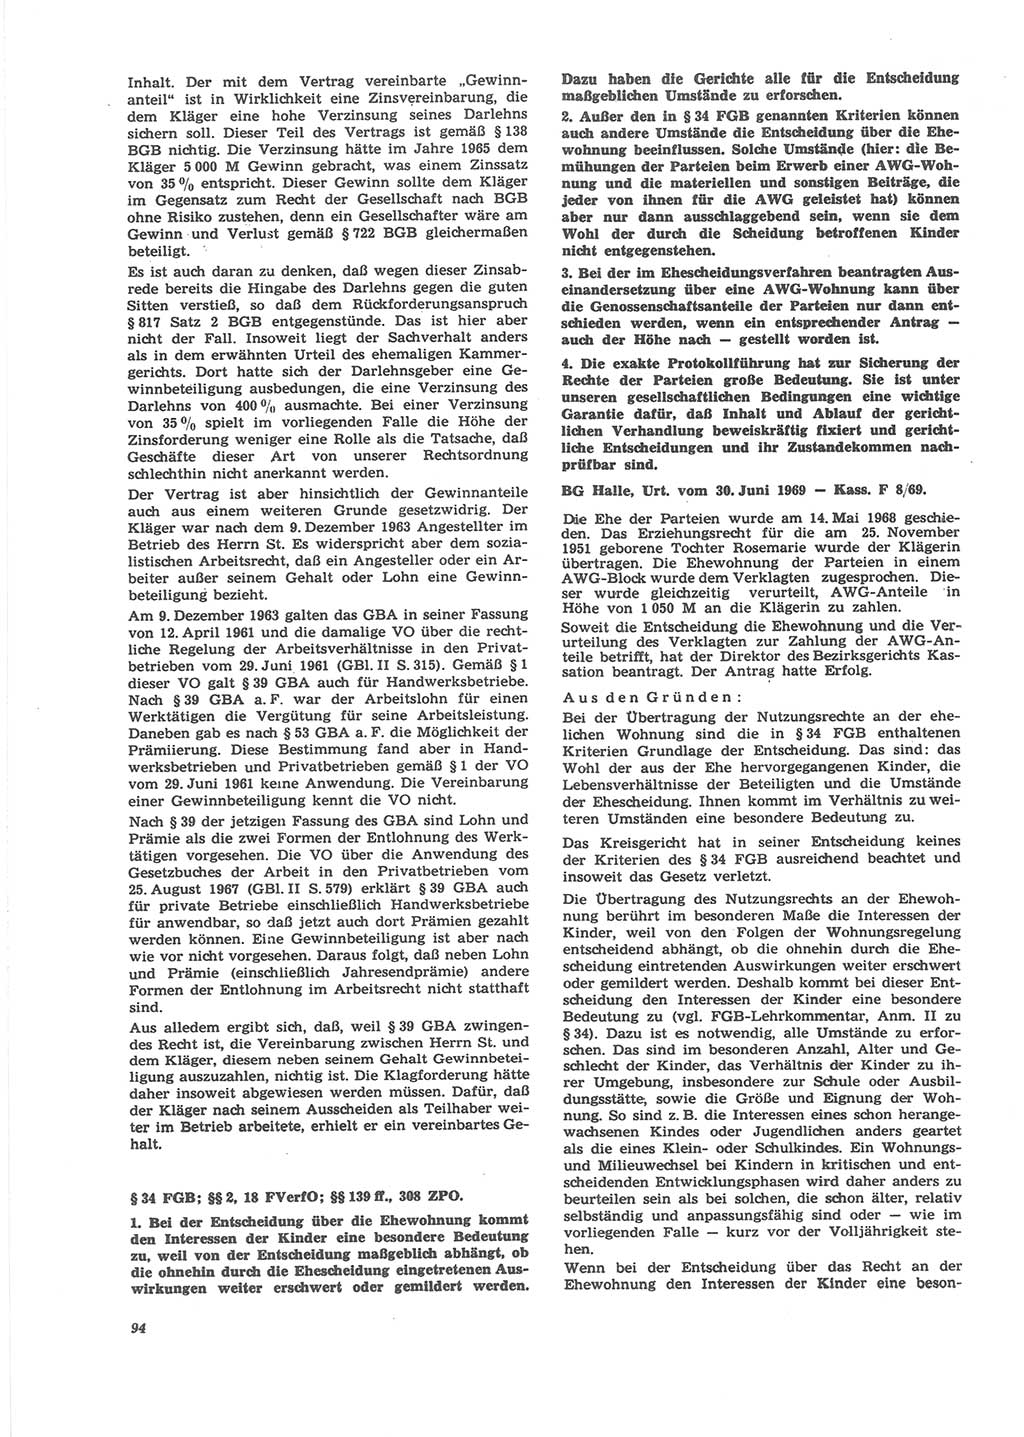 Neue Justiz (NJ), Zeitschrift für Recht und Rechtswissenschaft [Deutsche Demokratische Republik (DDR)], 24. Jahrgang 1970, Seite 94 (NJ DDR 1970, S. 94)